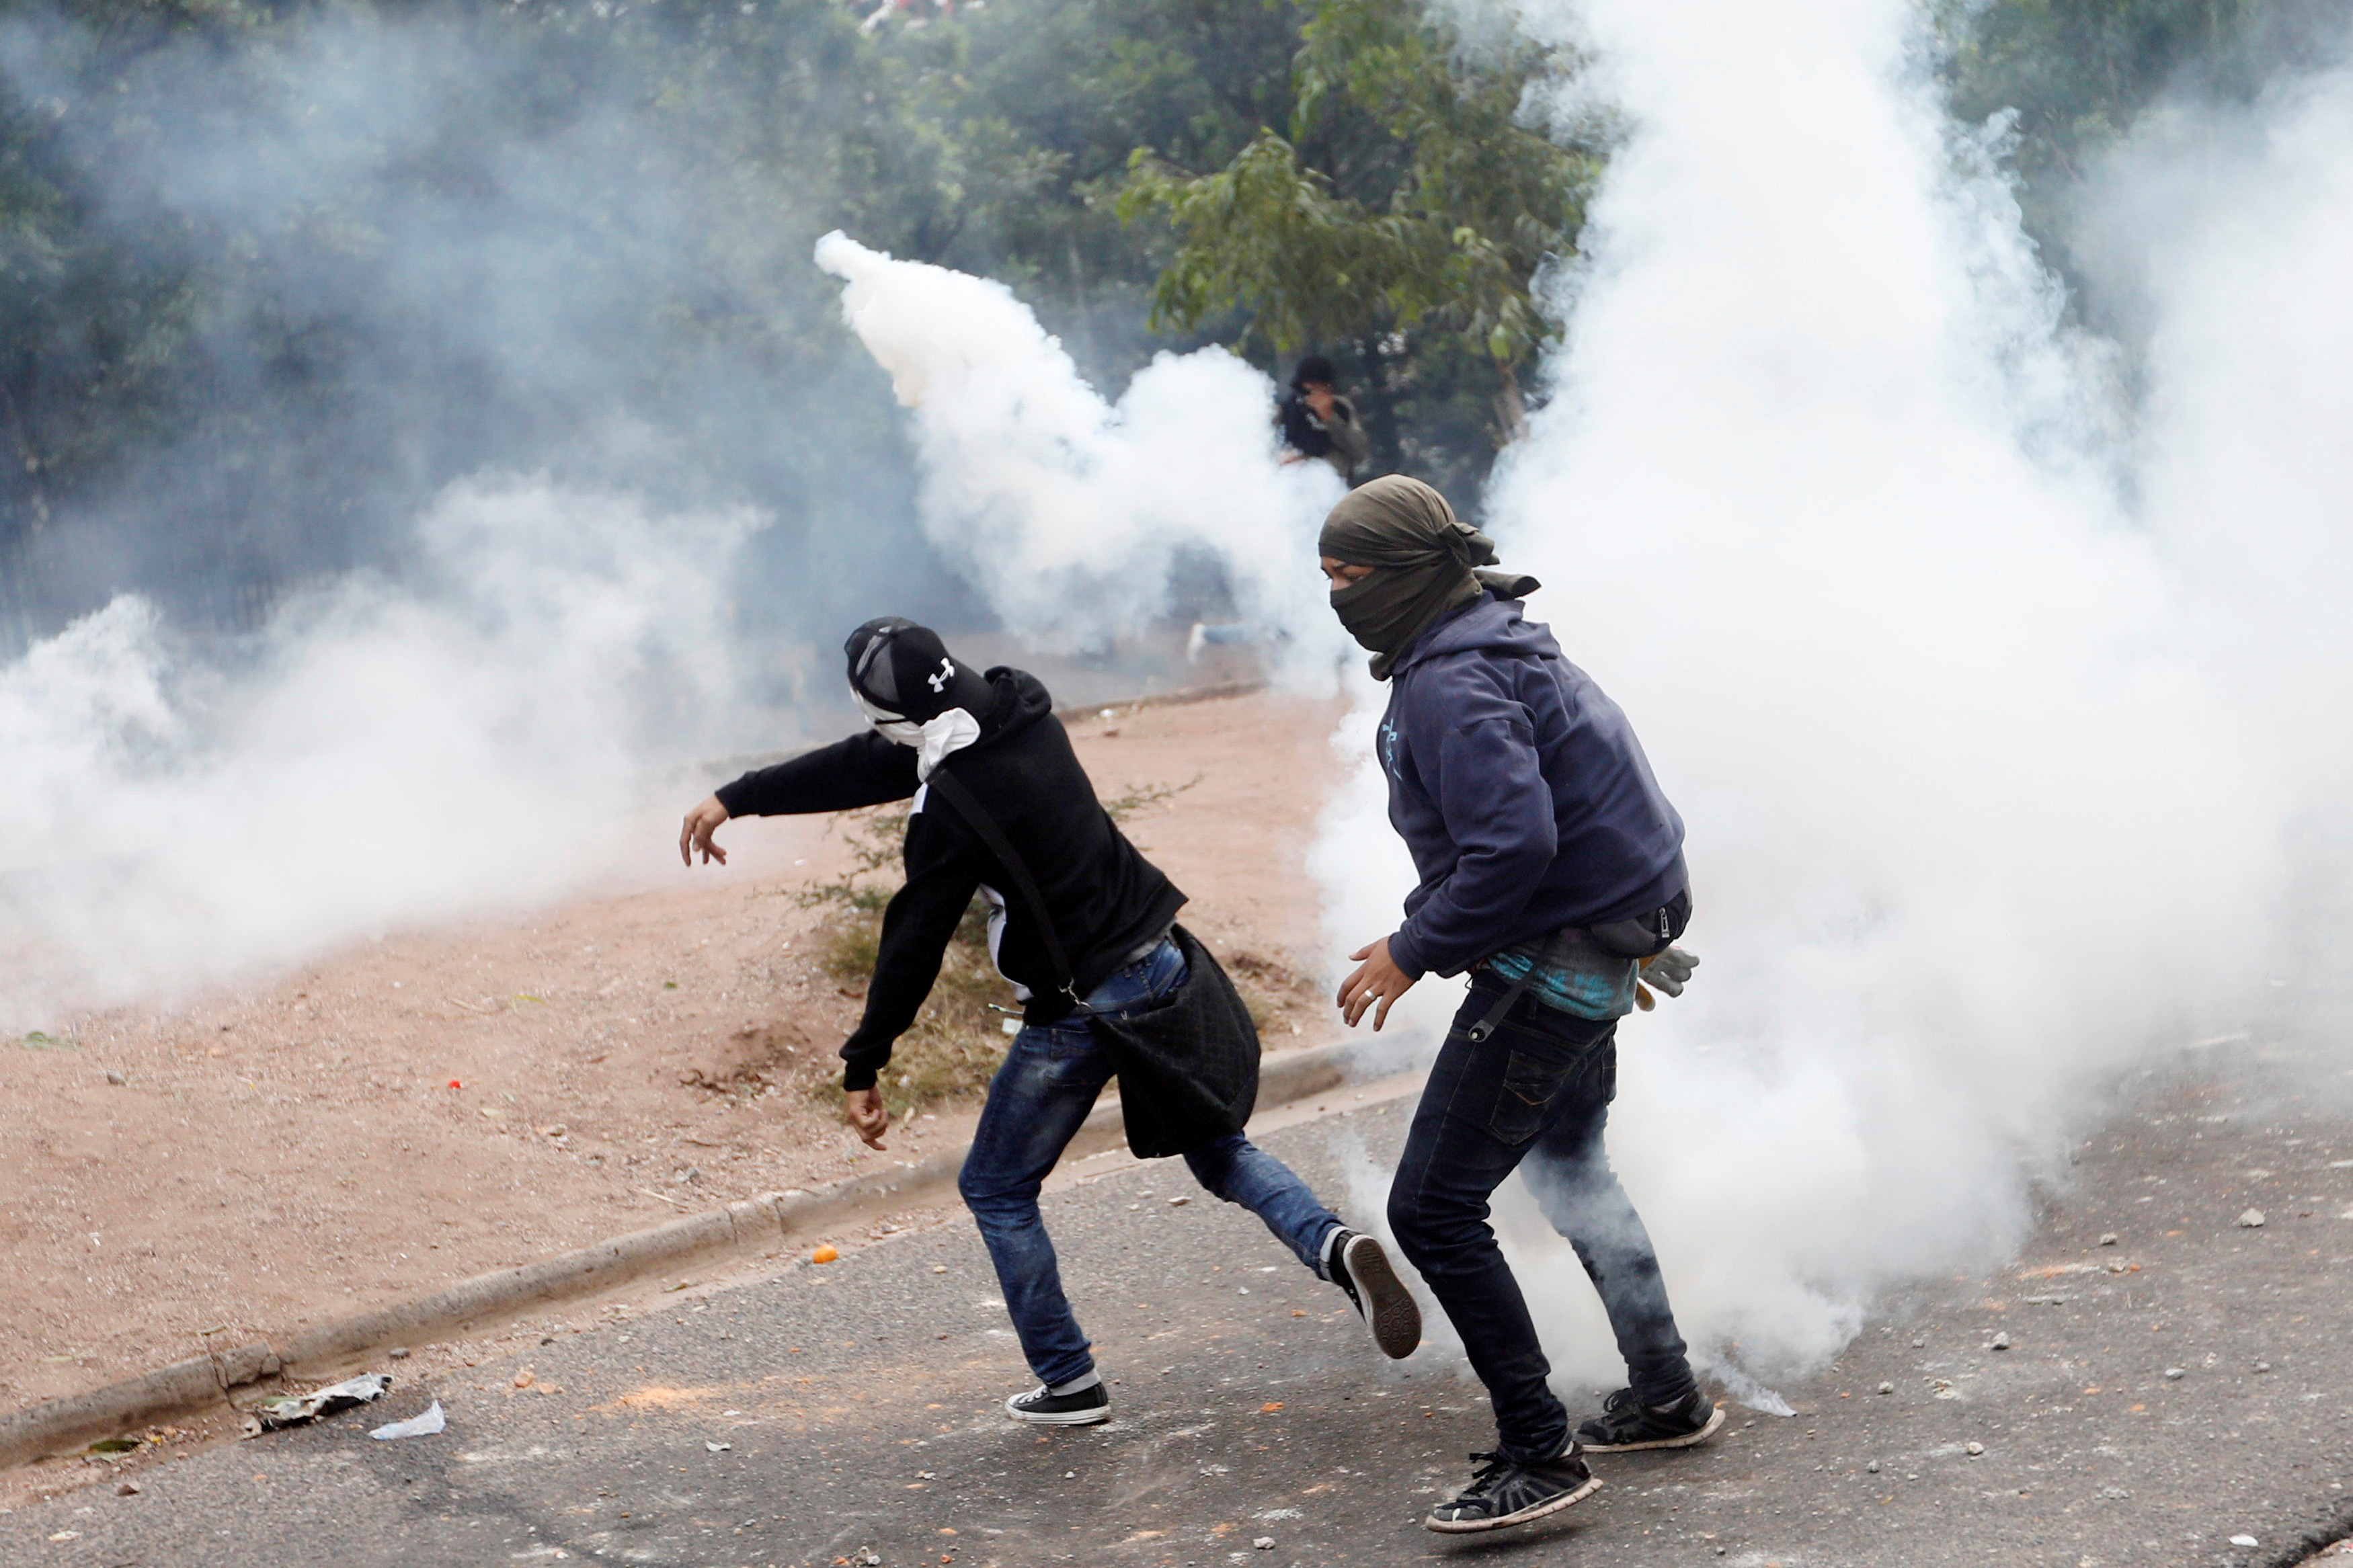 إطلاق الغاز المسيل للدموع خلال العنف بهندوراس